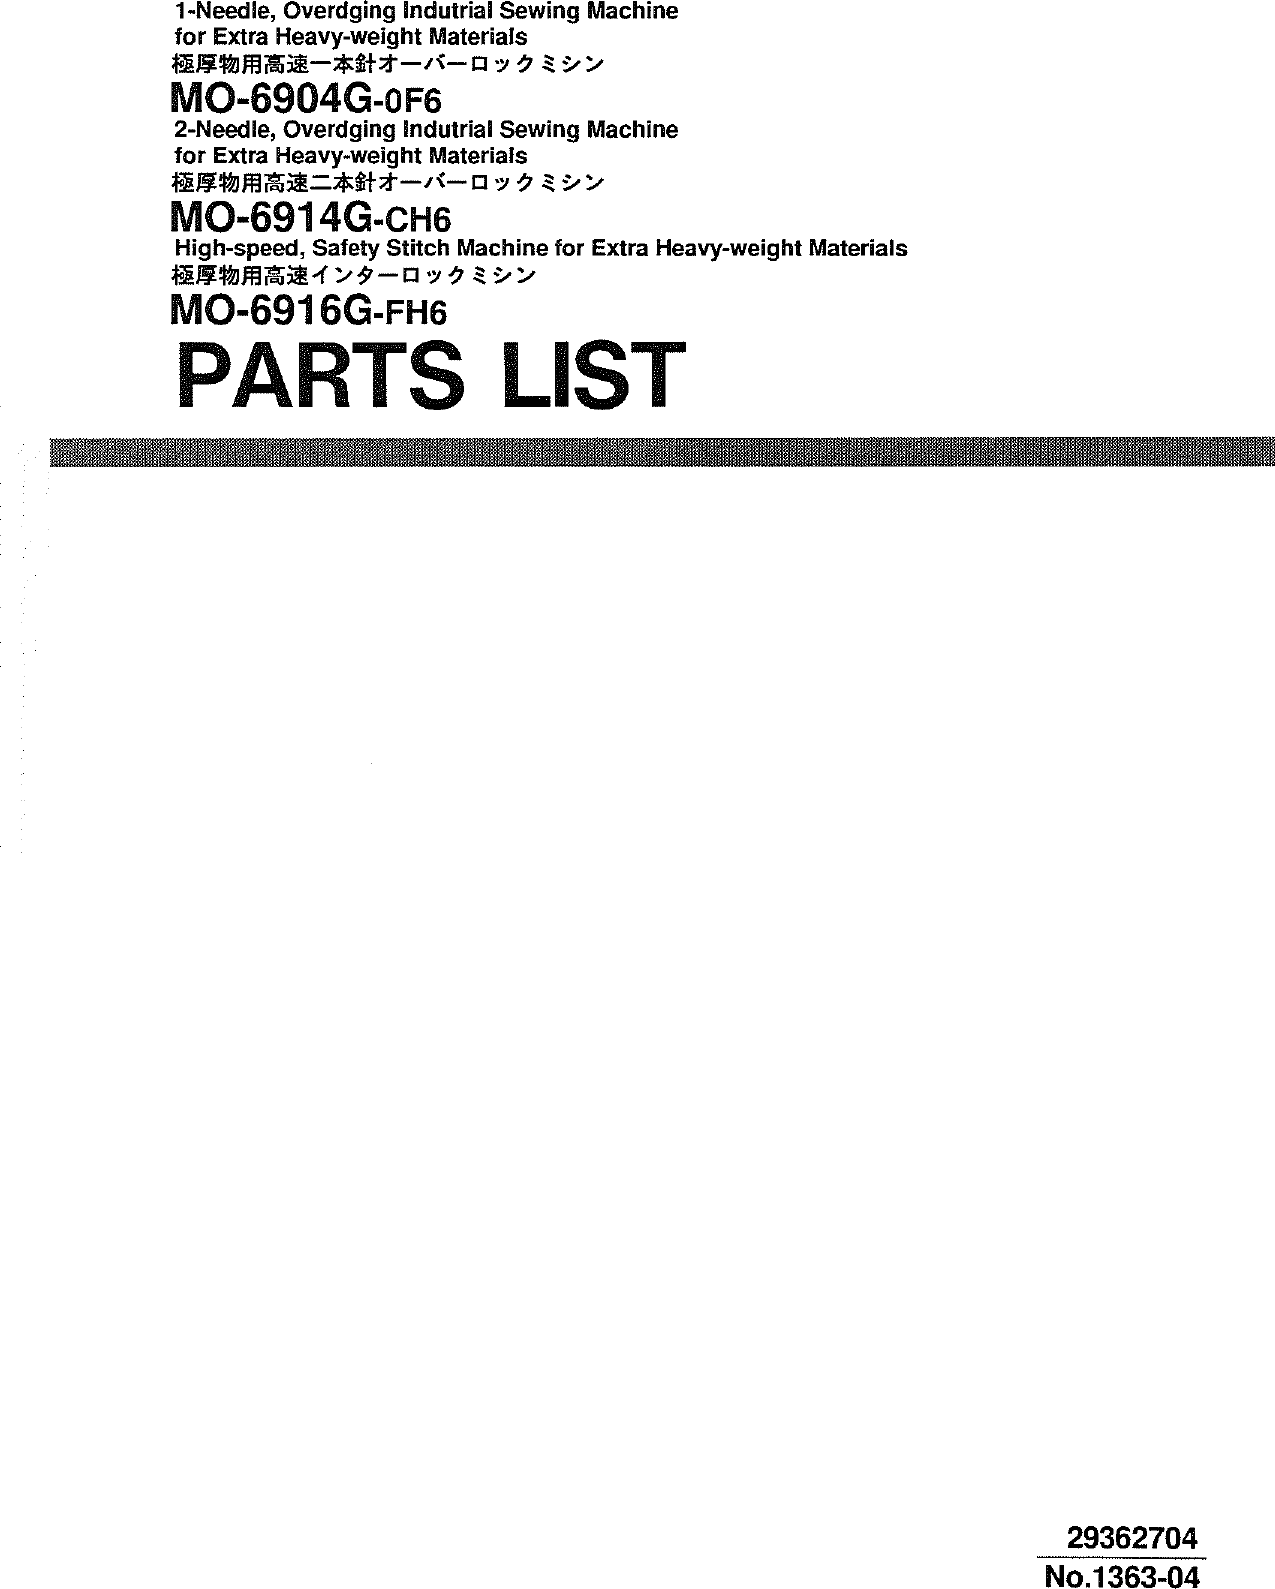 MO 6904,6914,6916,G,Parts List,29362704(no.1363 04)